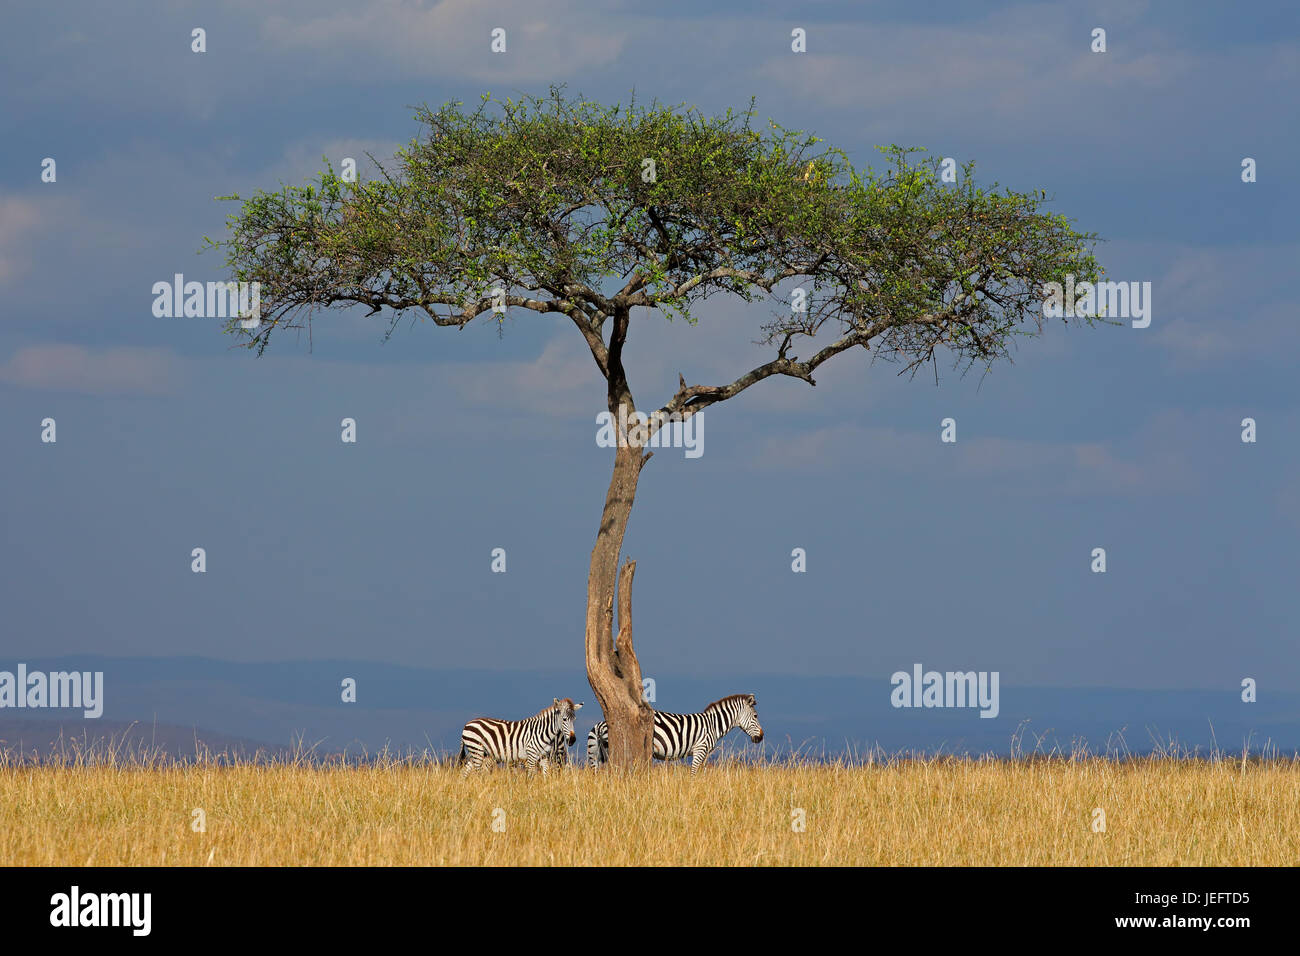 Llanuras cebras (Equus burchelli) y árbol en los prados, la Reserva Nacional de Masai Mara, Kenya Foto de stock